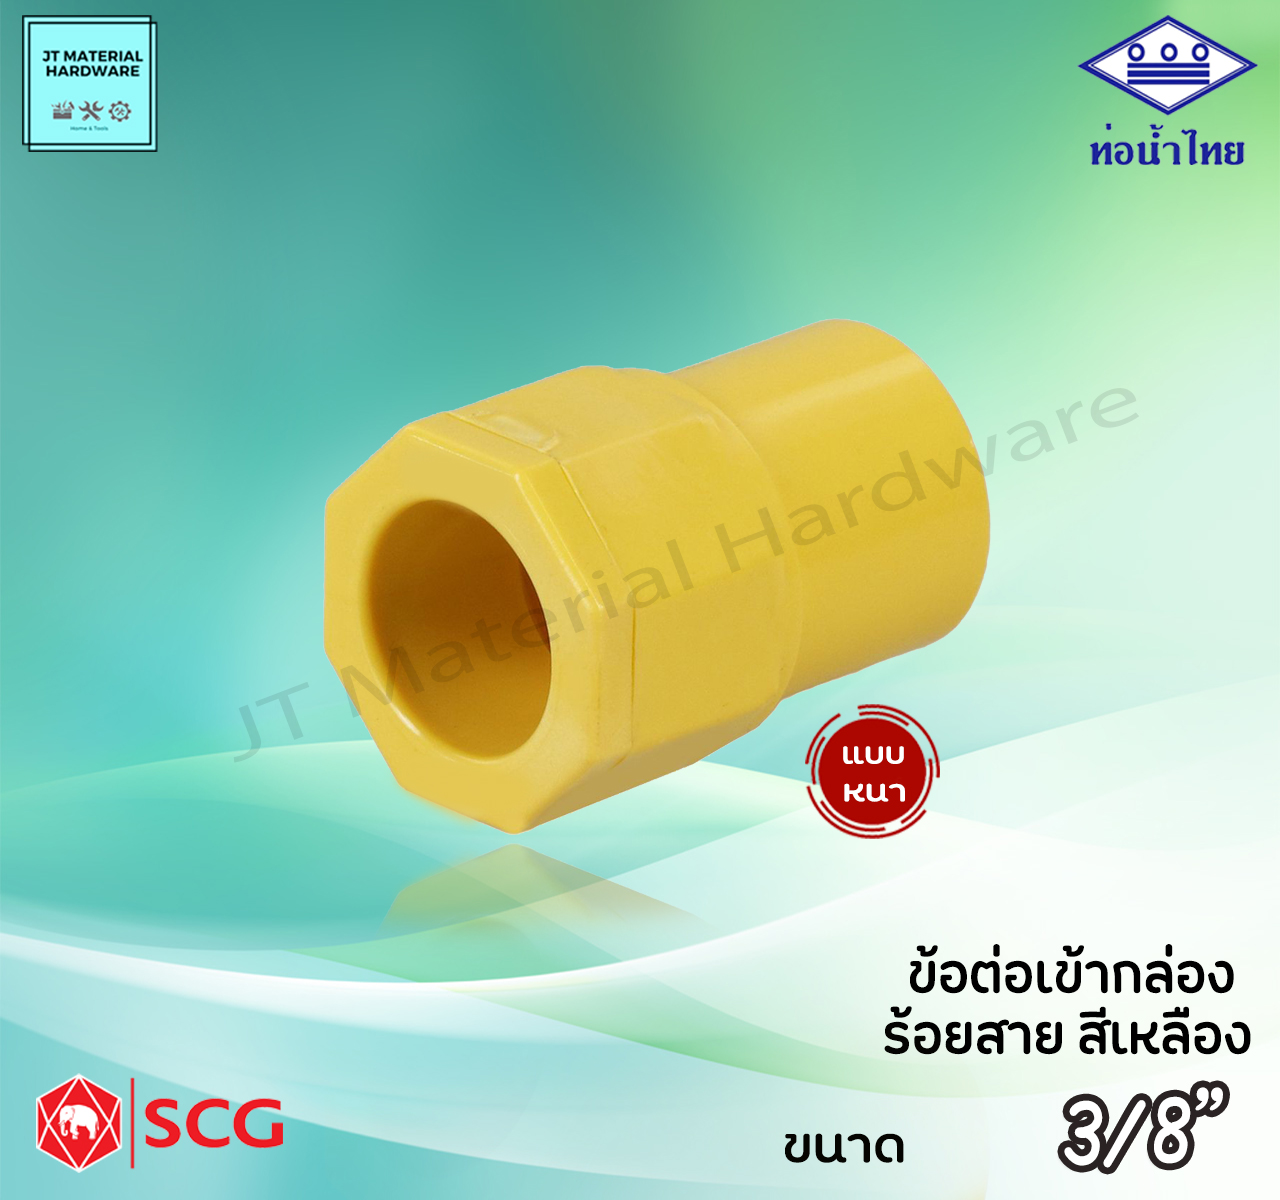 ท่อน้ำไทย SCG (ตราช้าง) ข้อต่อเข้ากล่อง เหลือง พีวีซี PVC  ร้อยสาย ไฟฟ้า ขนาด 3/8